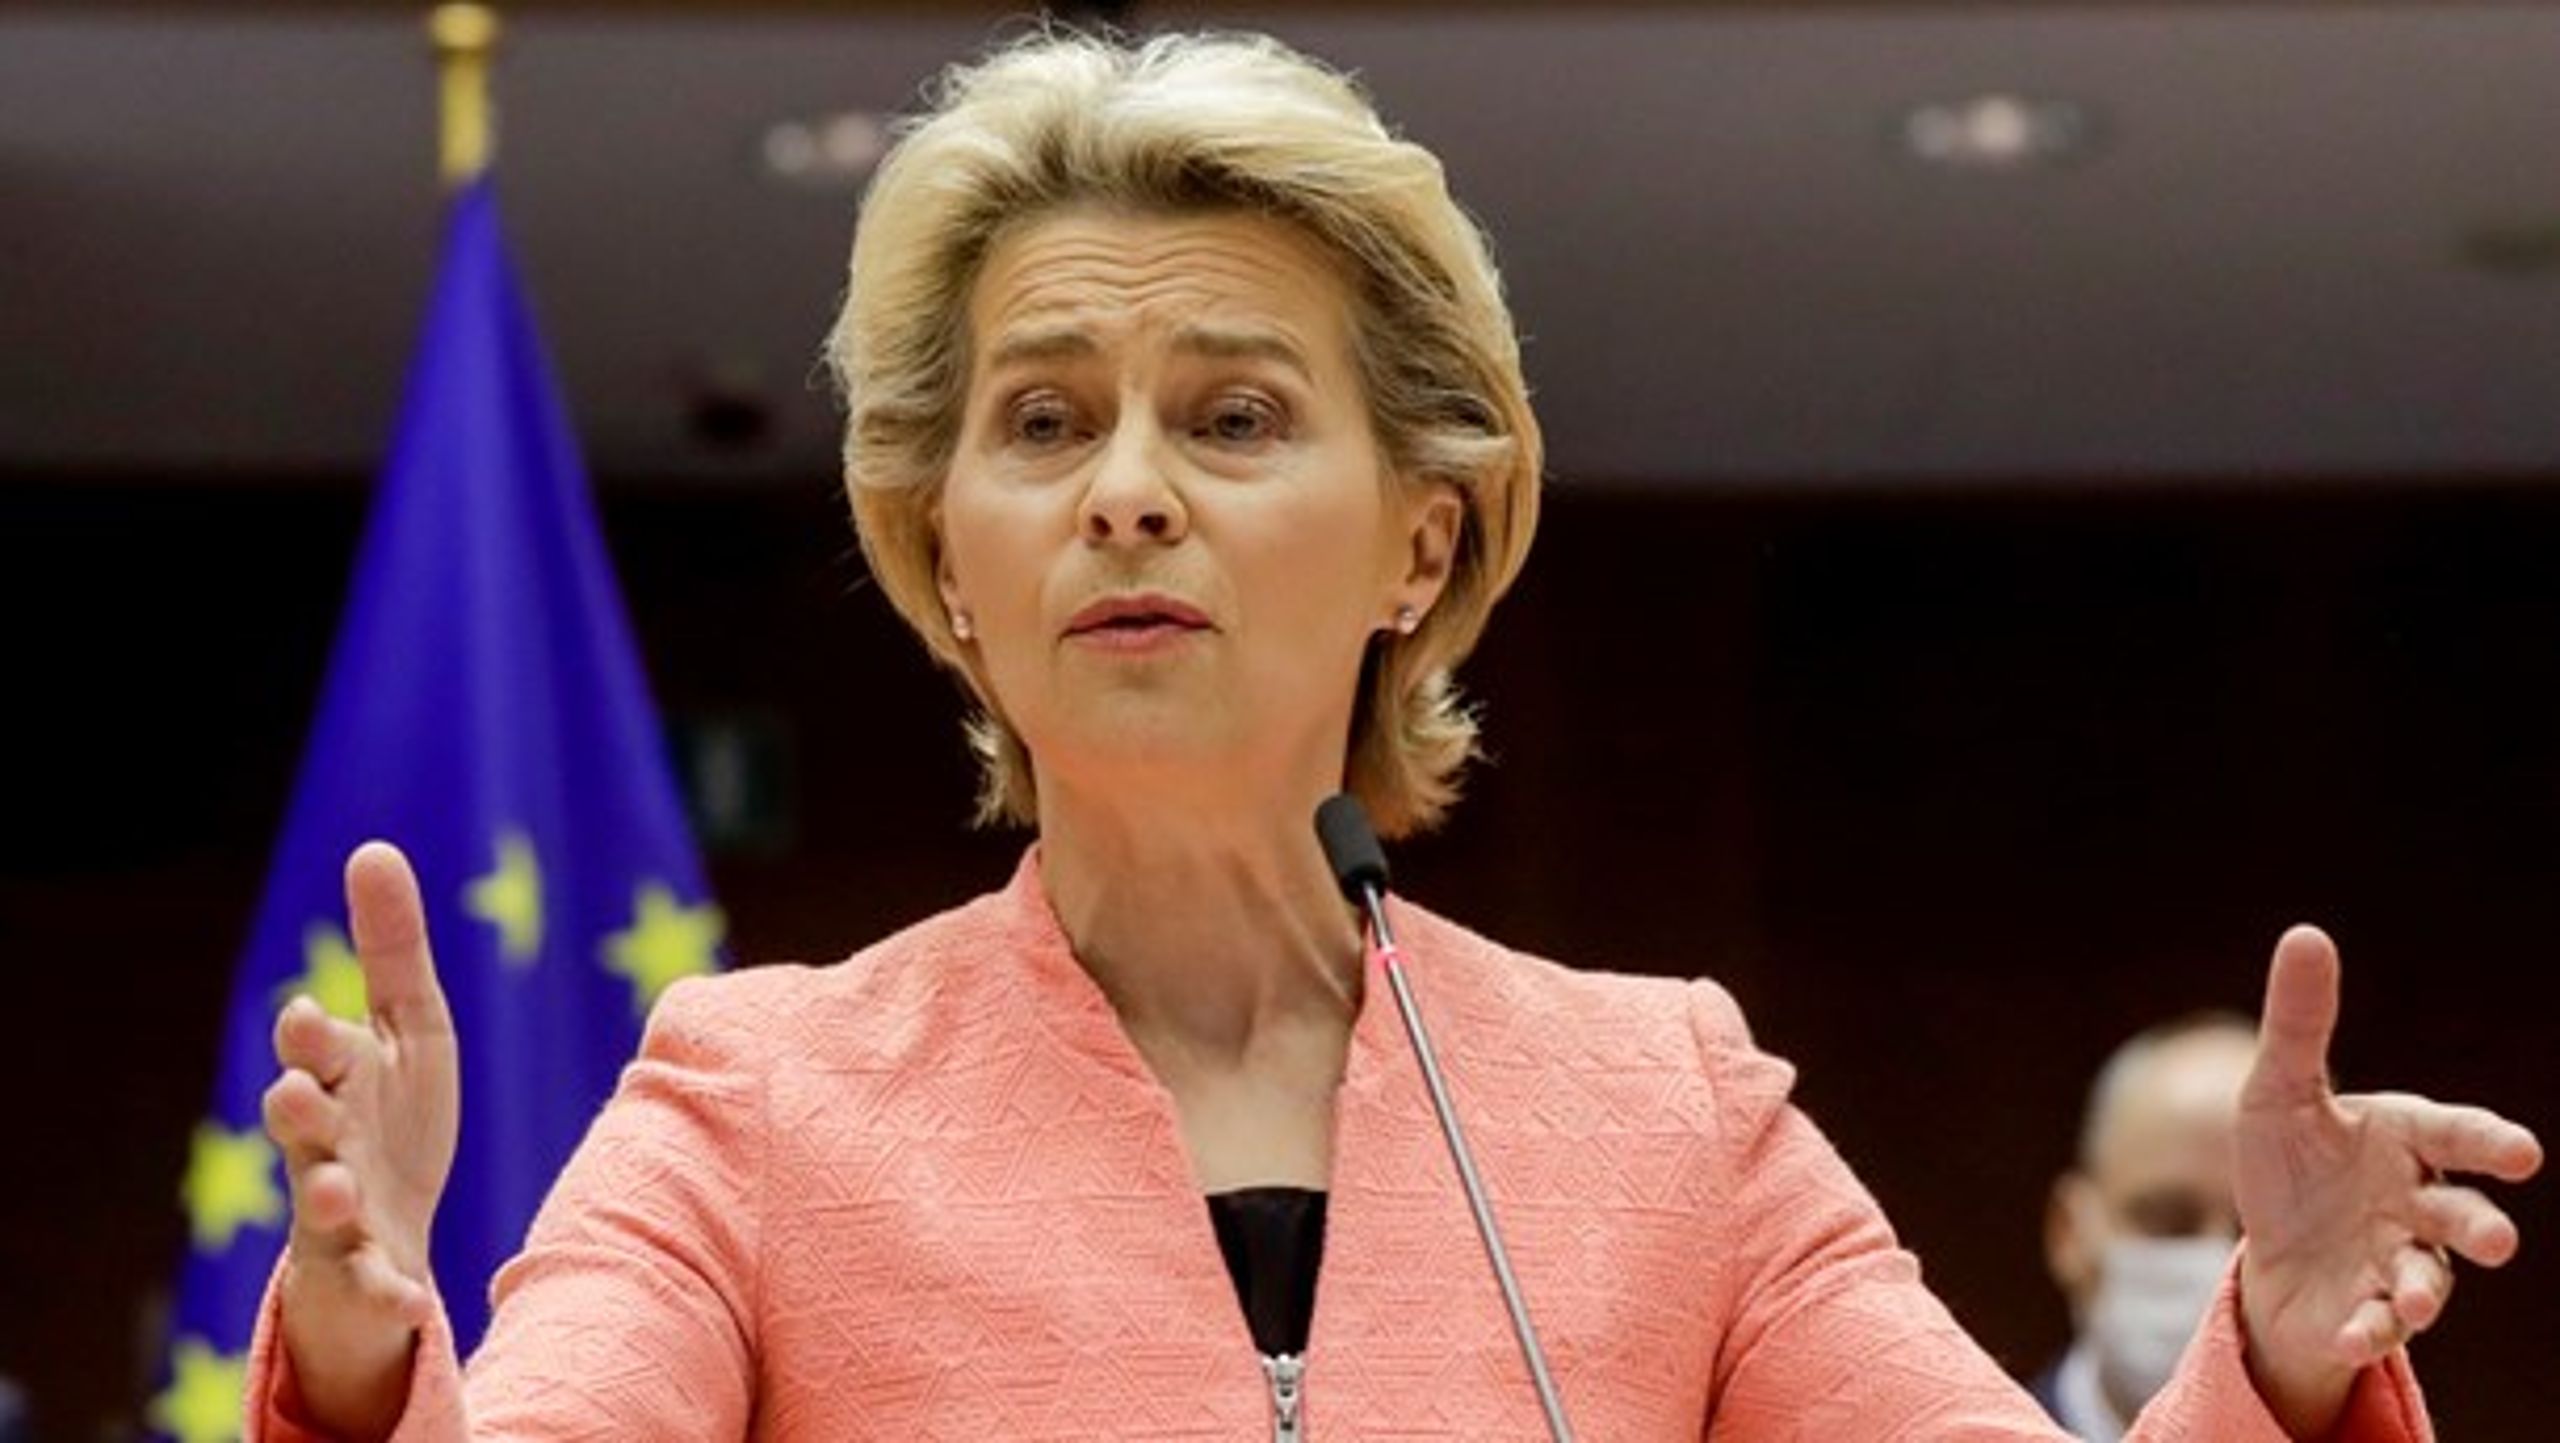 Ursula von der Leyen glemte i sin tale om EU's tilstand at berøre det civilsamfund, der er under pres i særligt Polen og Ungarn, skriver Lone Loklindt, formand for Nyt Europa.